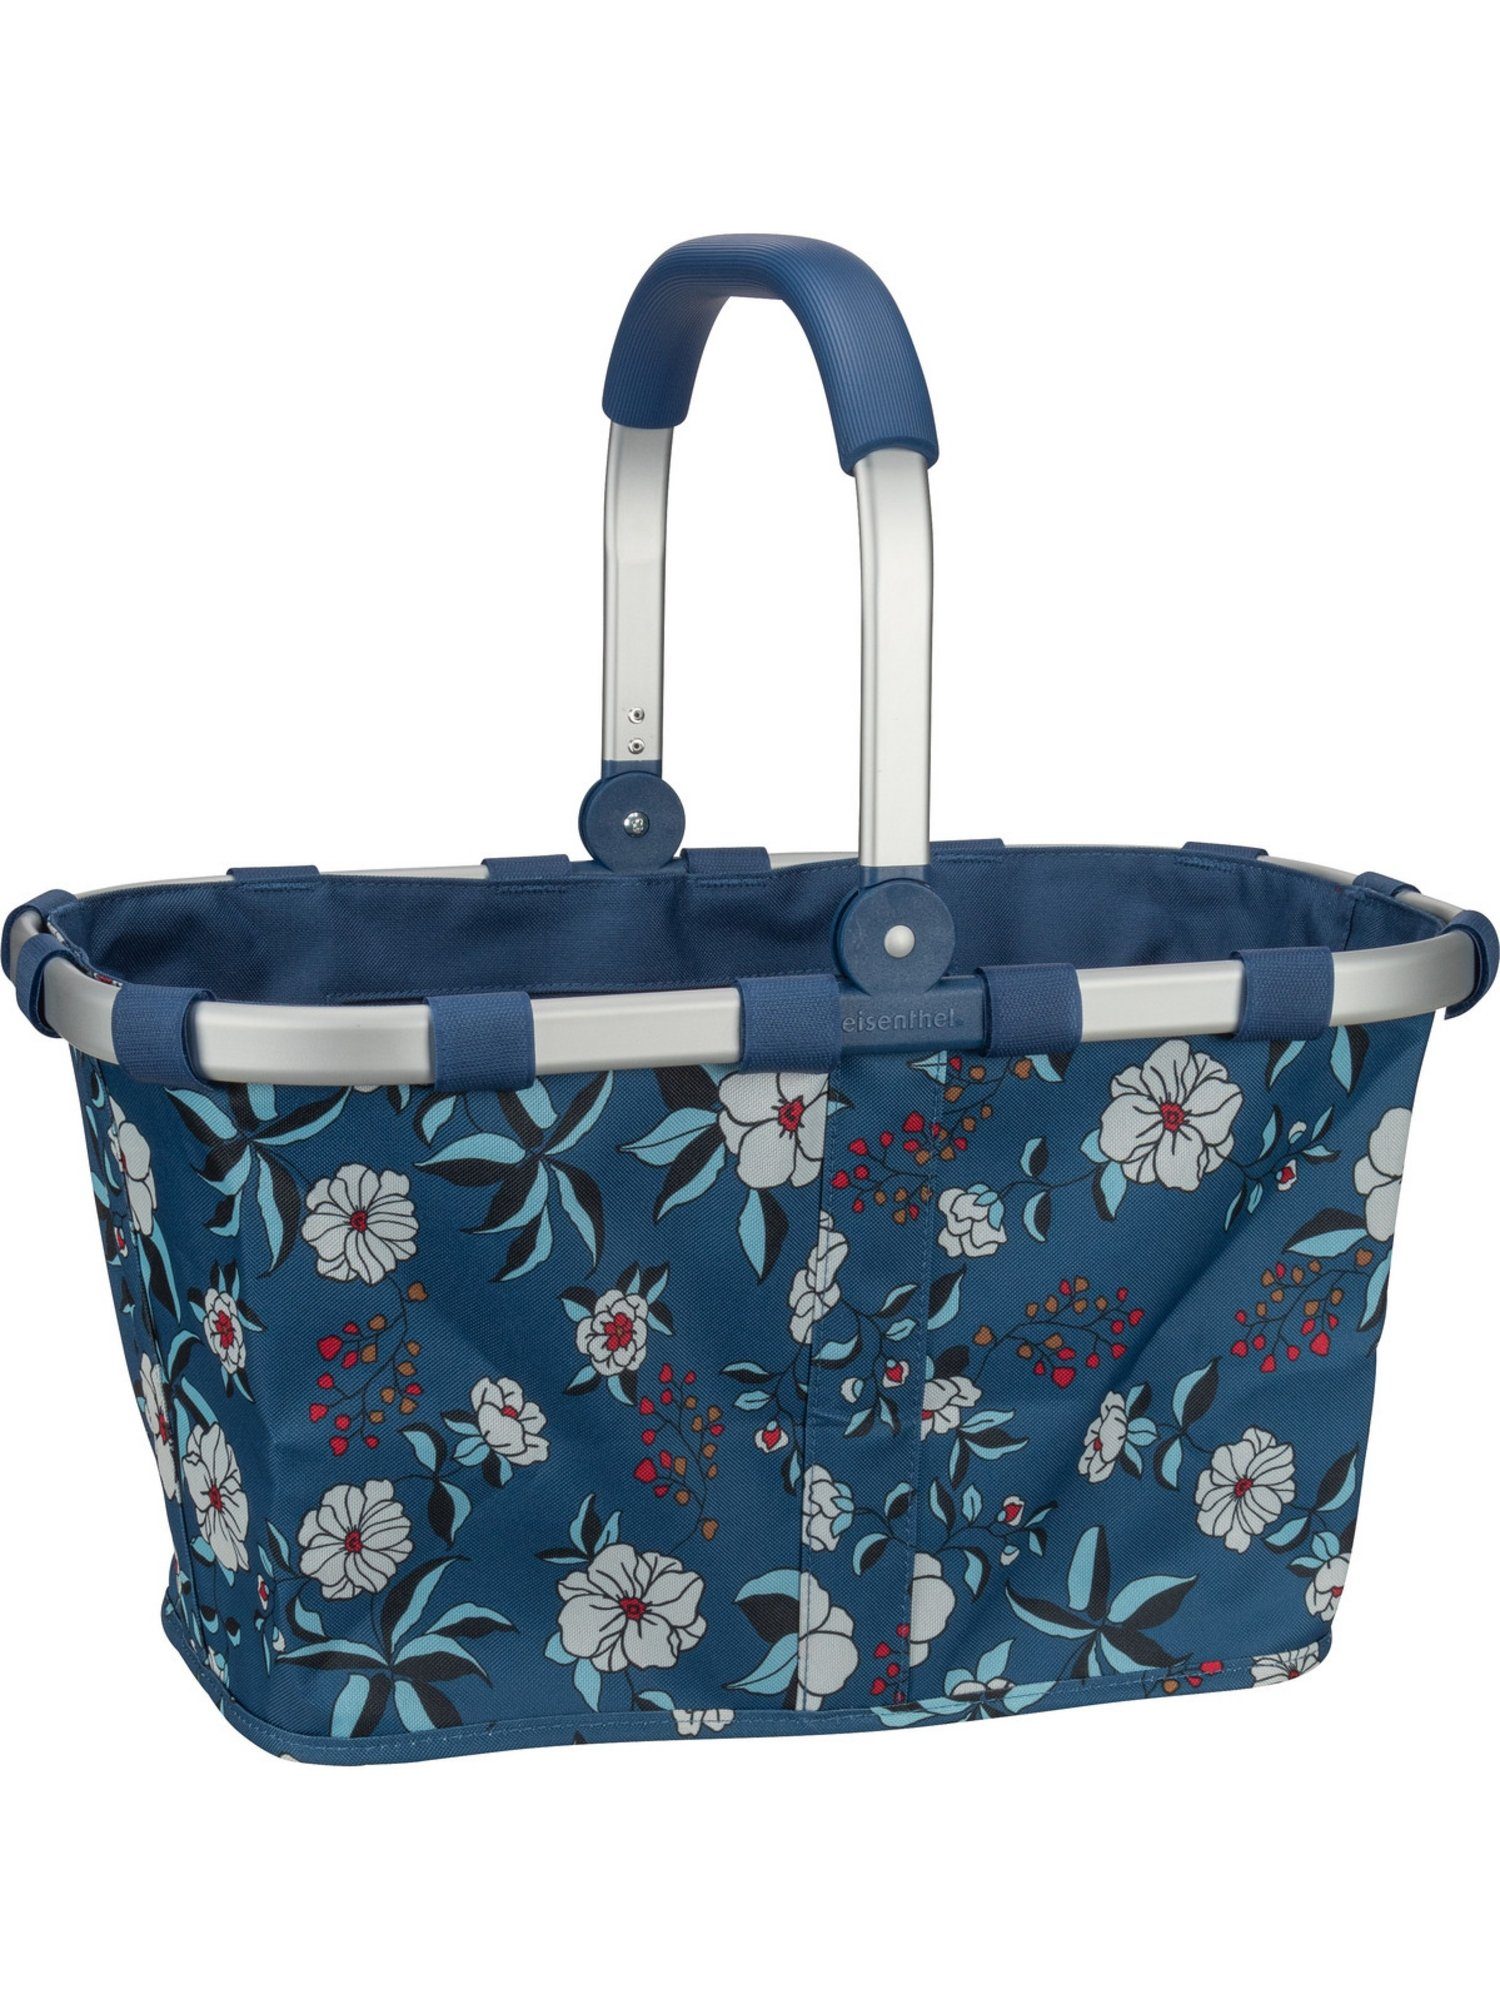 REISENTHEL® Einkaufsbeutel carrybag, 22 l Garden Blue